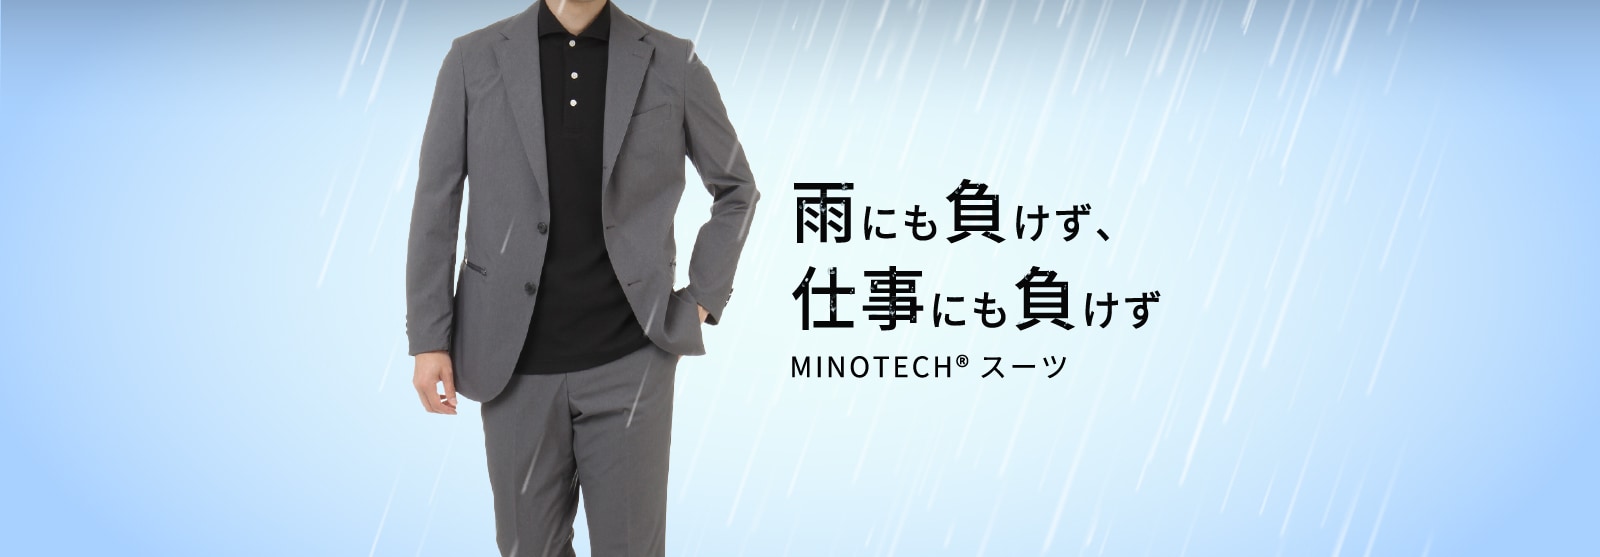 雨にも負けず、仕事にも負けず MINOTECH®スーツ